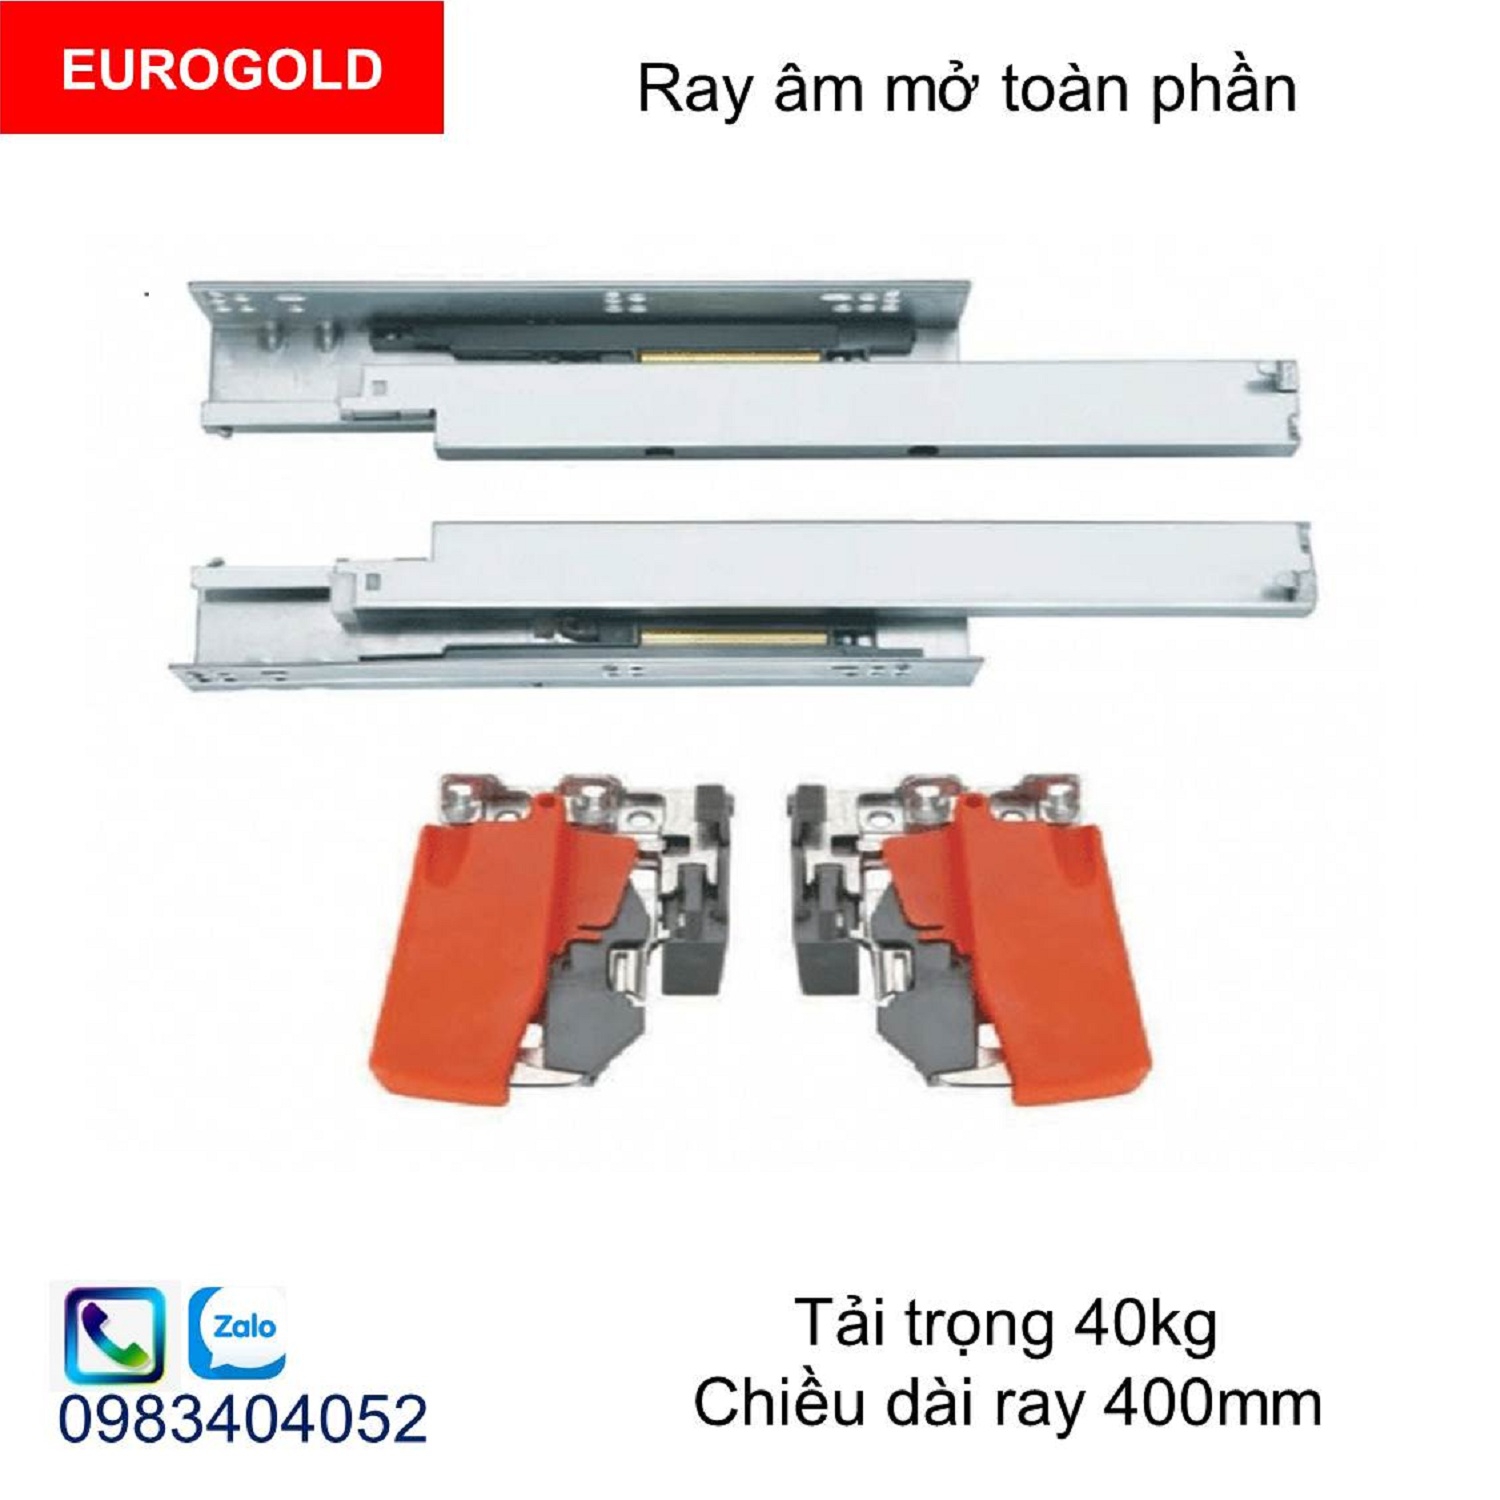 Ray-truot-eurogold